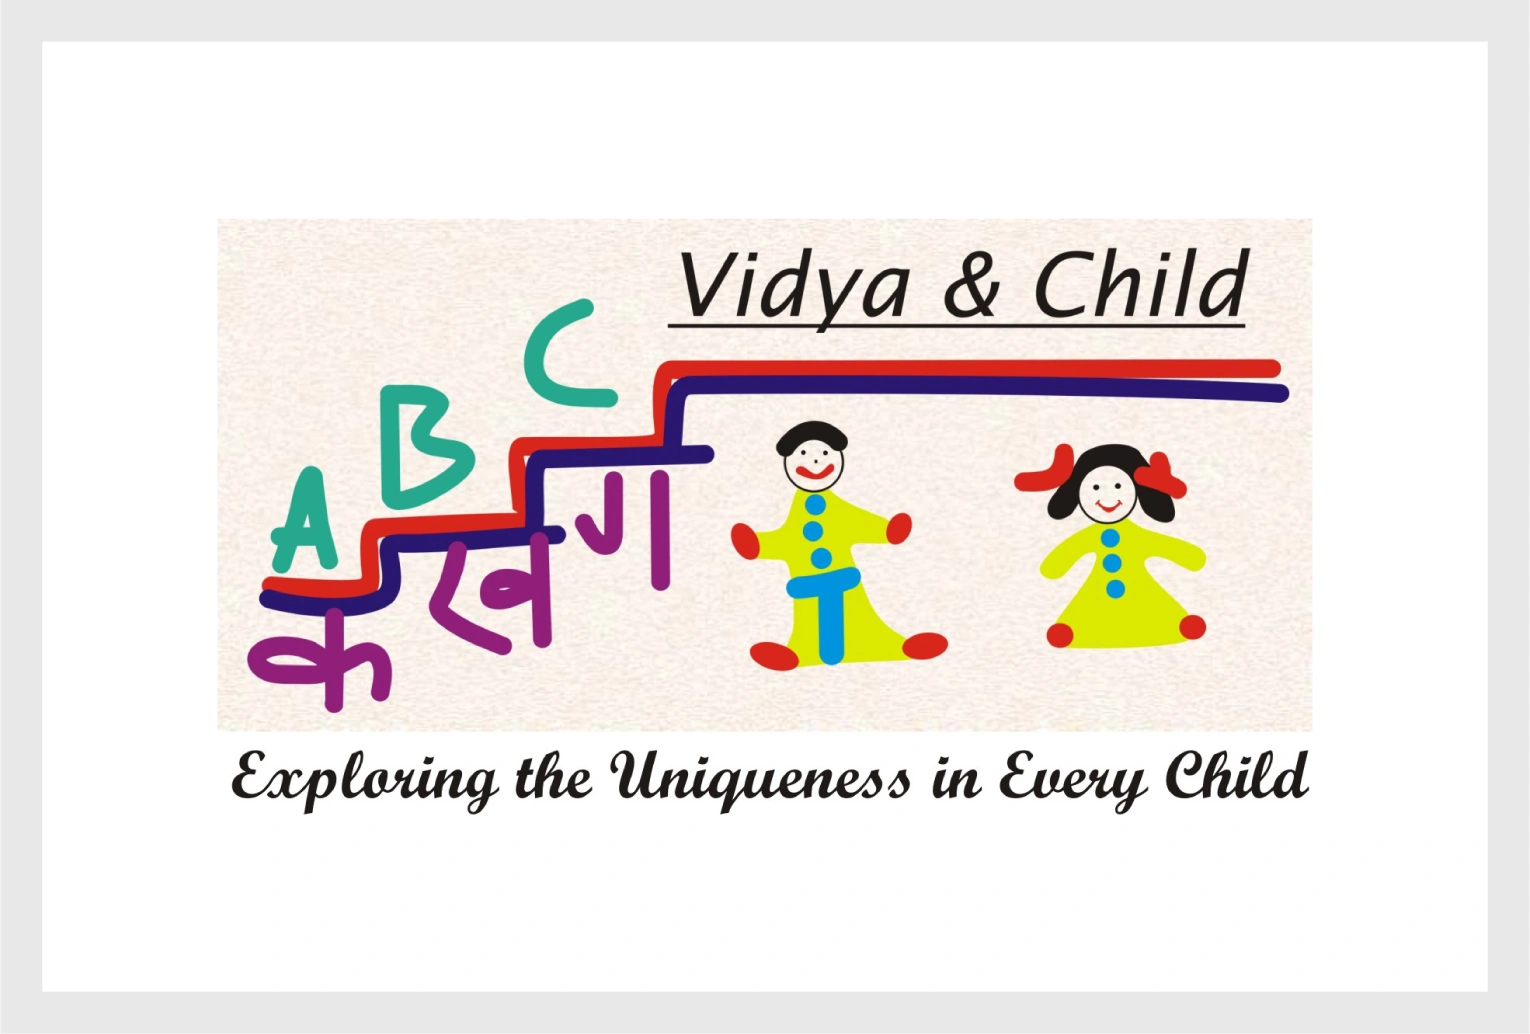 Vidya & Child Logo